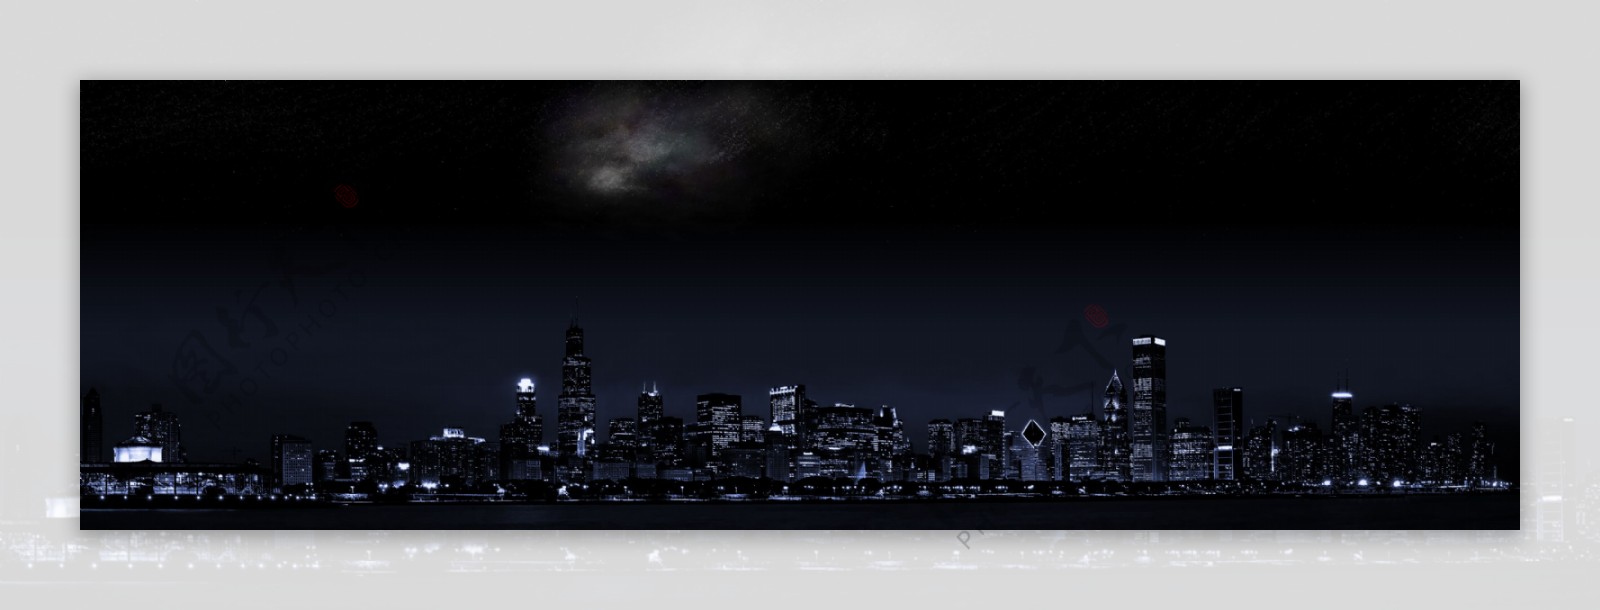 宽屏城市夜景图片